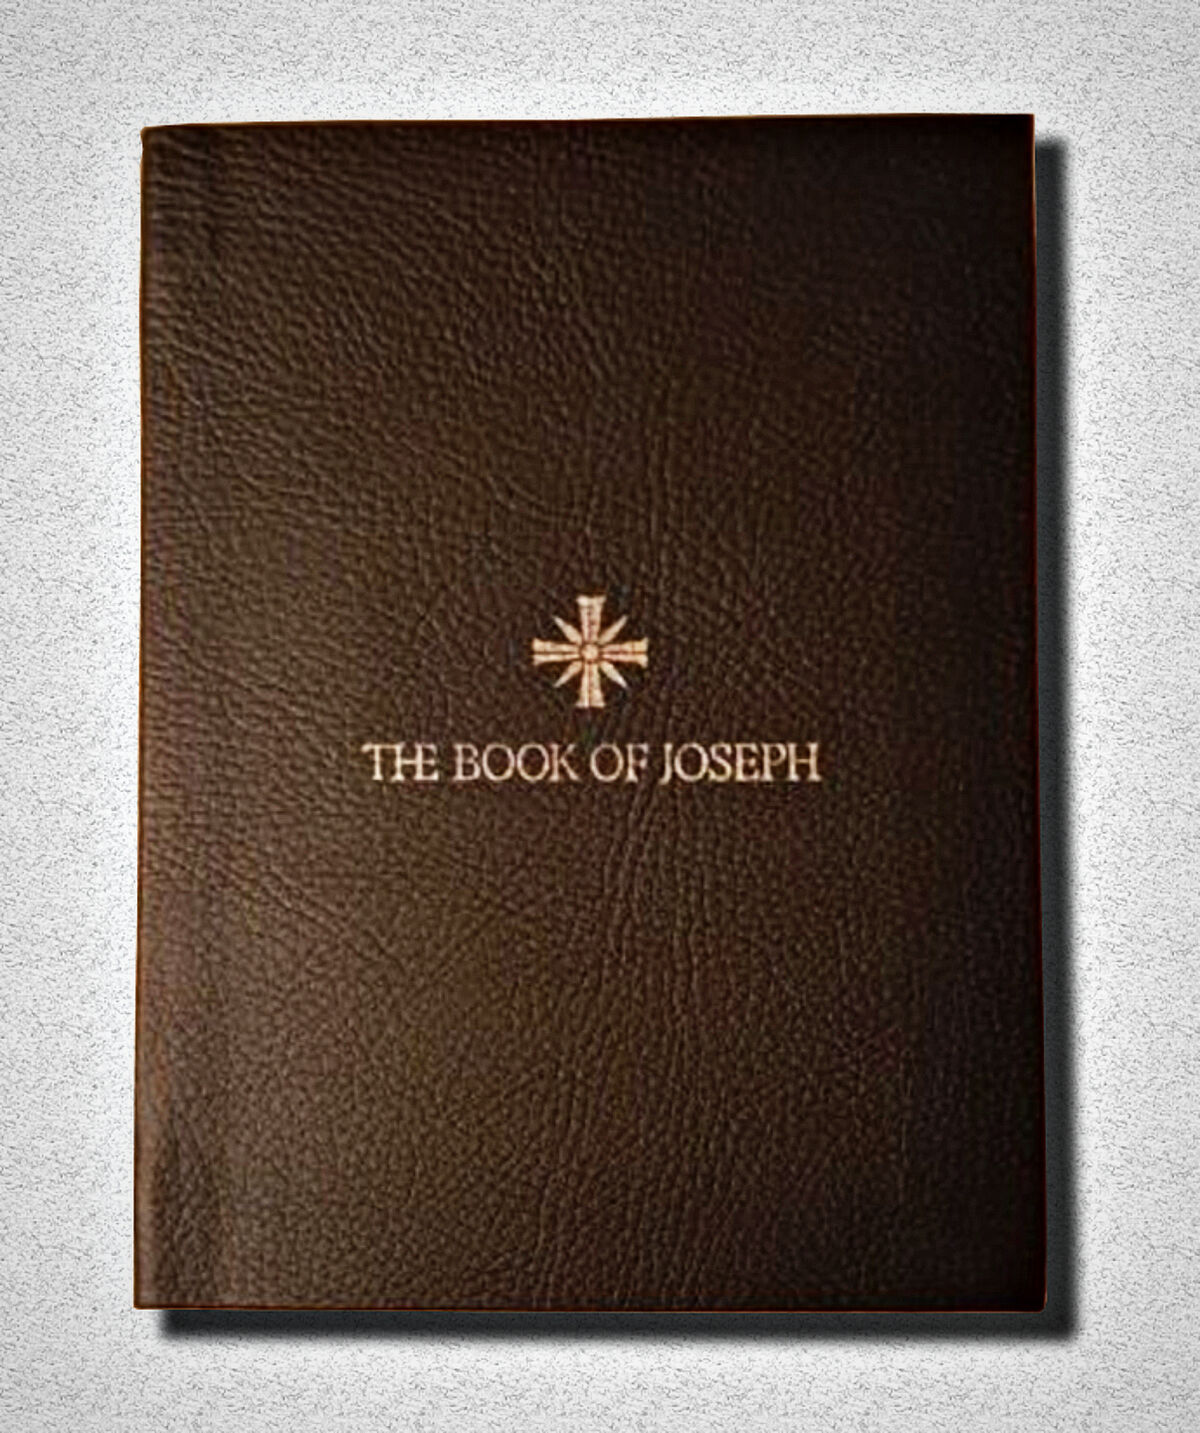 The book of Joseph